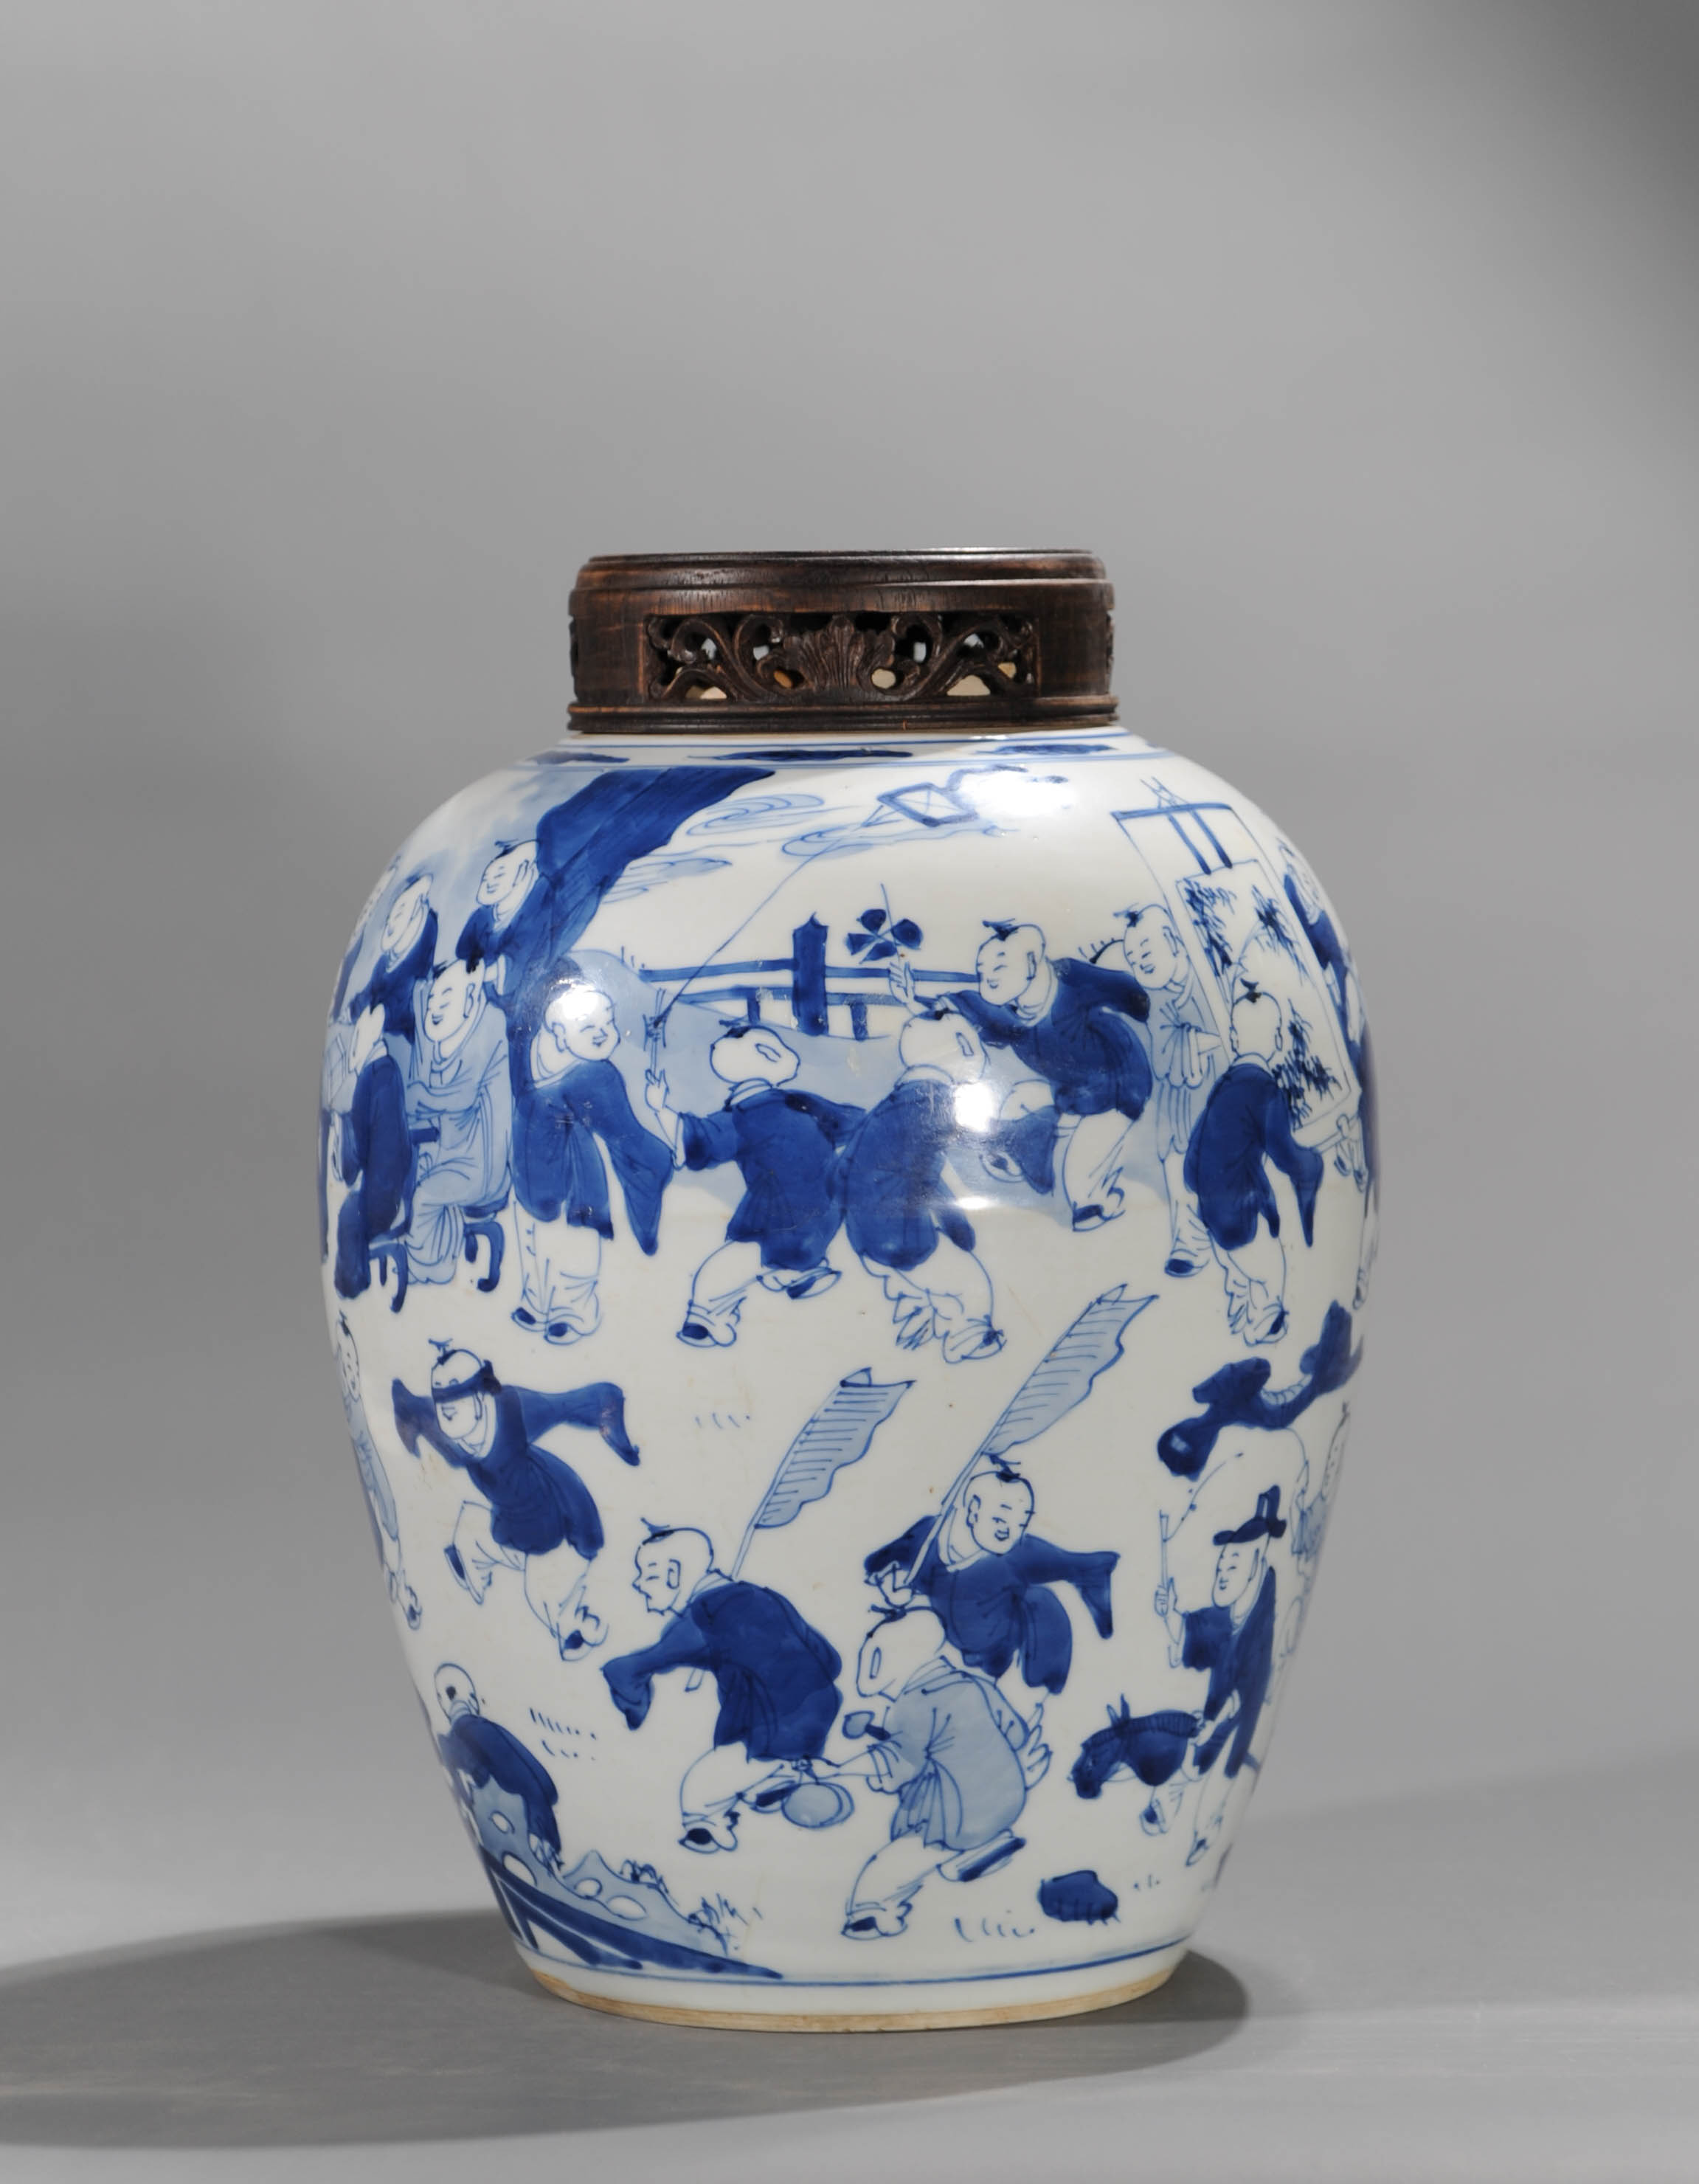 早在唐代长沙窑瓷器上就有出现,清初康熙时期,在青花和彩瓷中出现较多